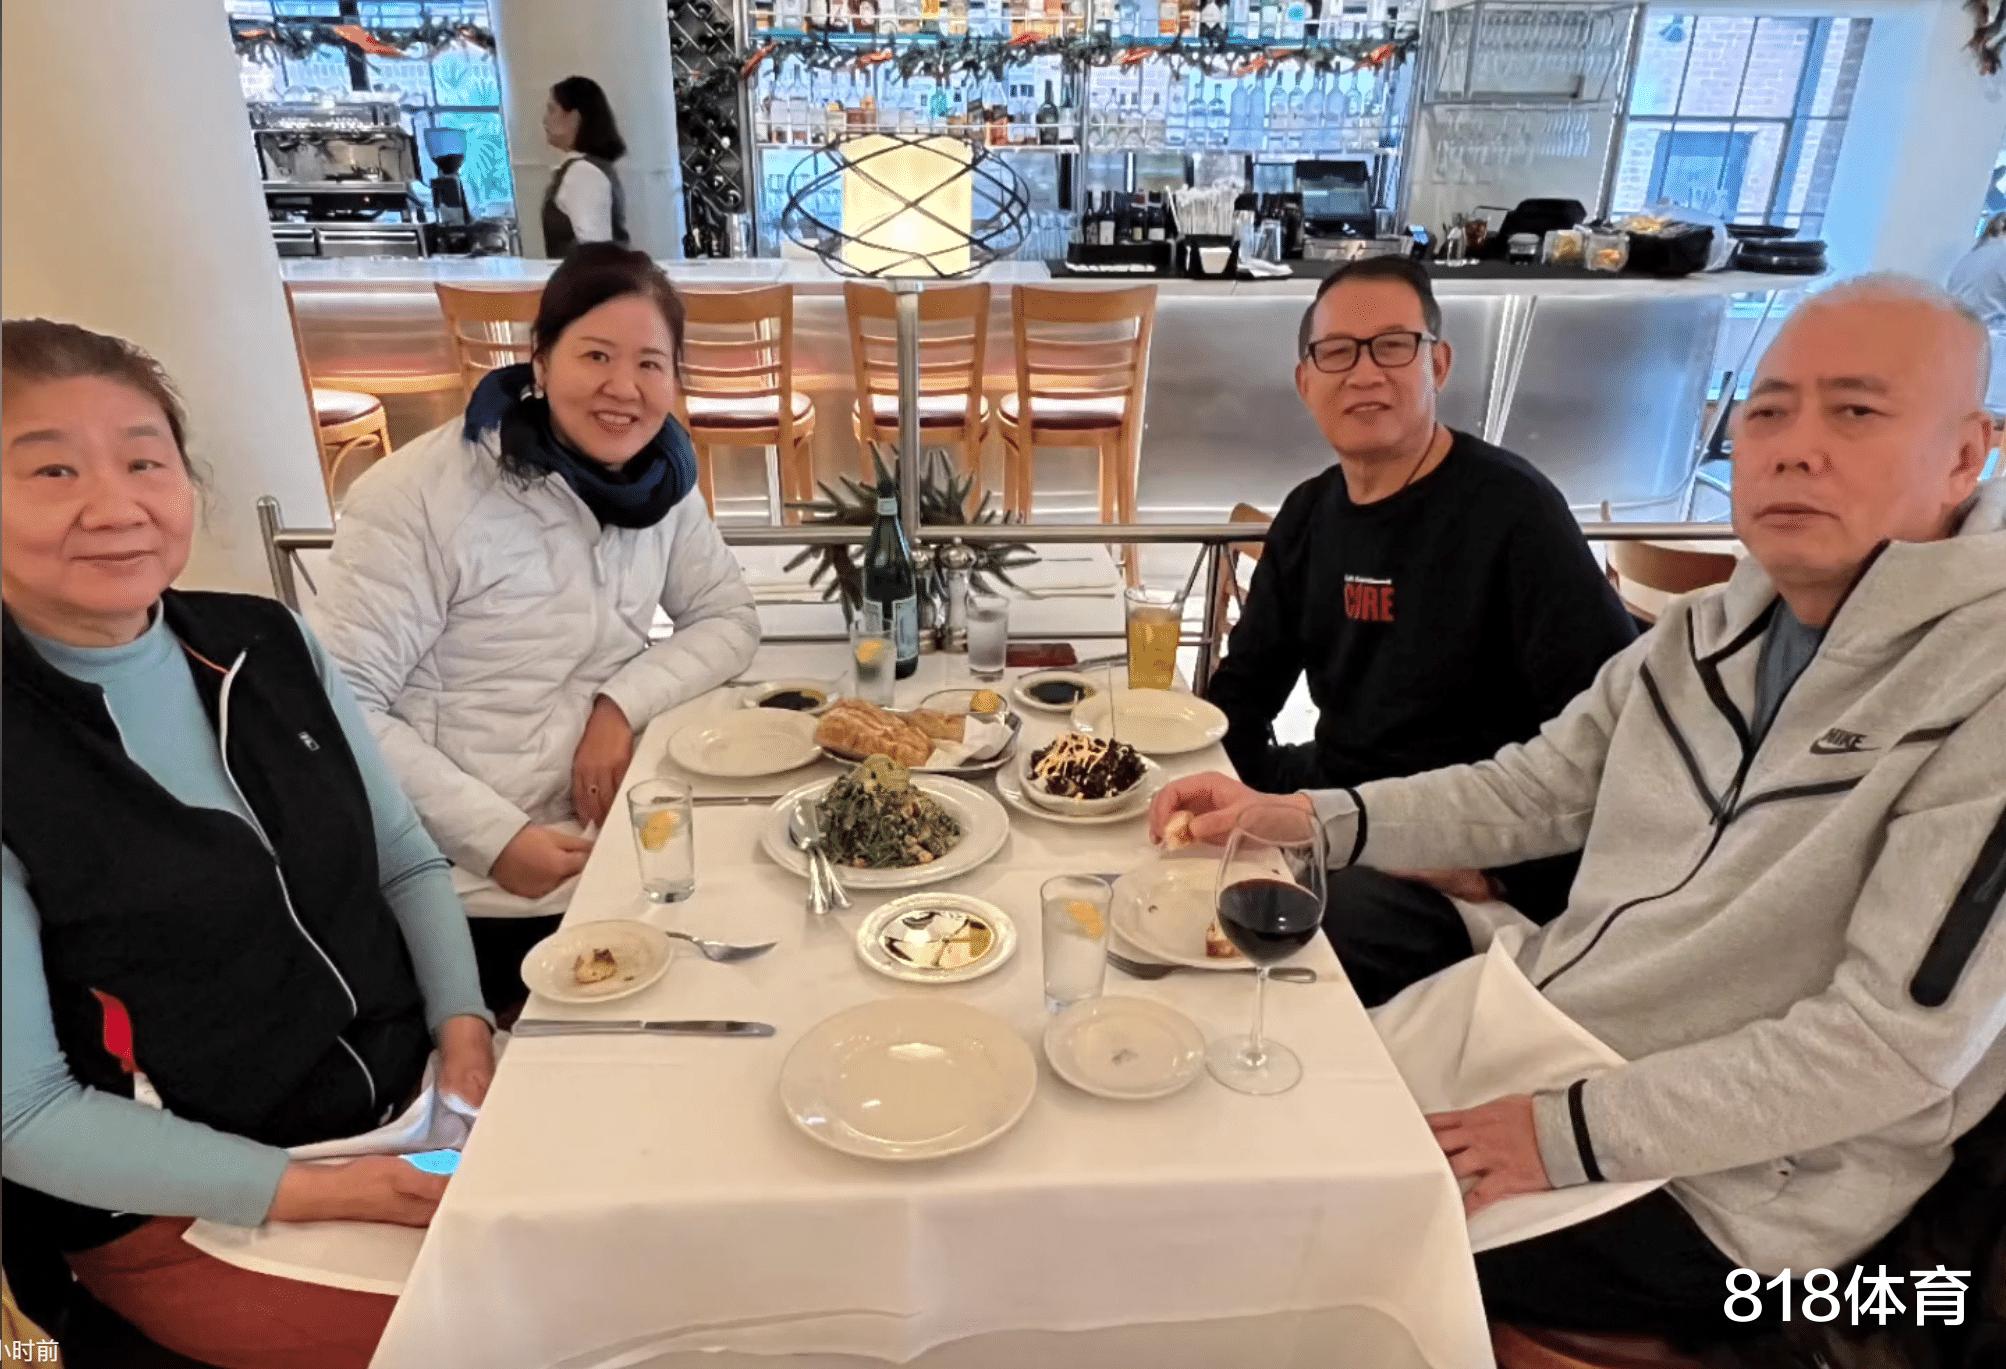 幸福! 62岁郎平美国洛杉矶跨年, 与老公姐姐姐夫中餐馆吃饭红光满面(6)